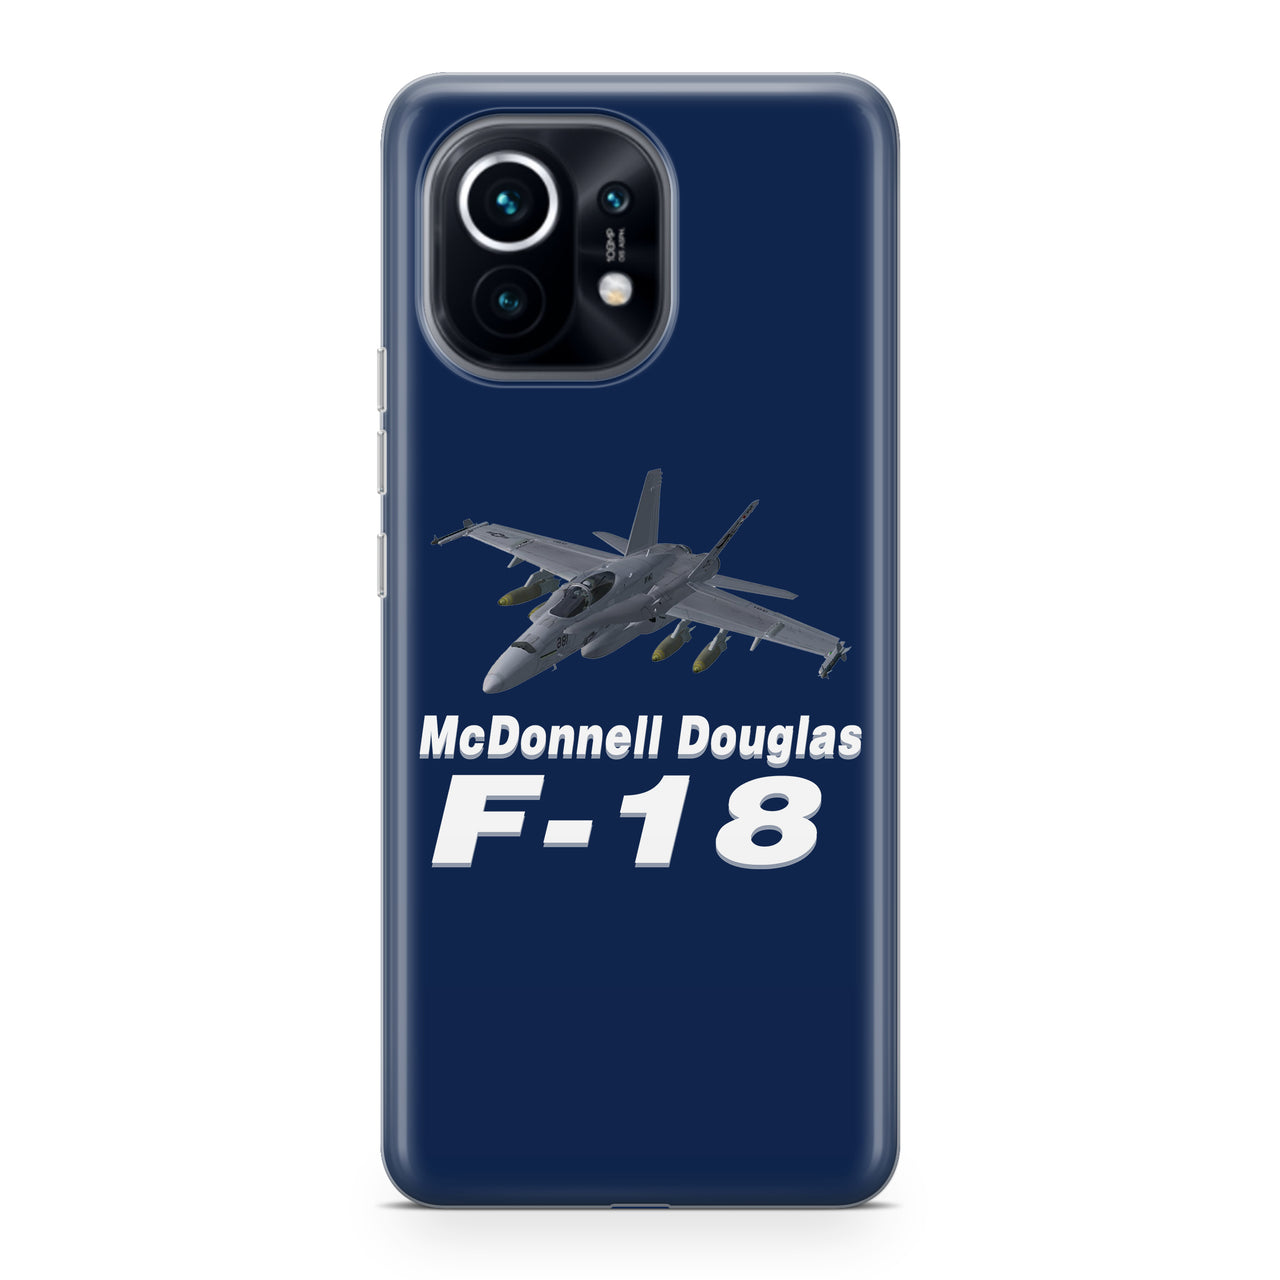 The McDonnell Douglas F18 Designed Xiaomi Cases